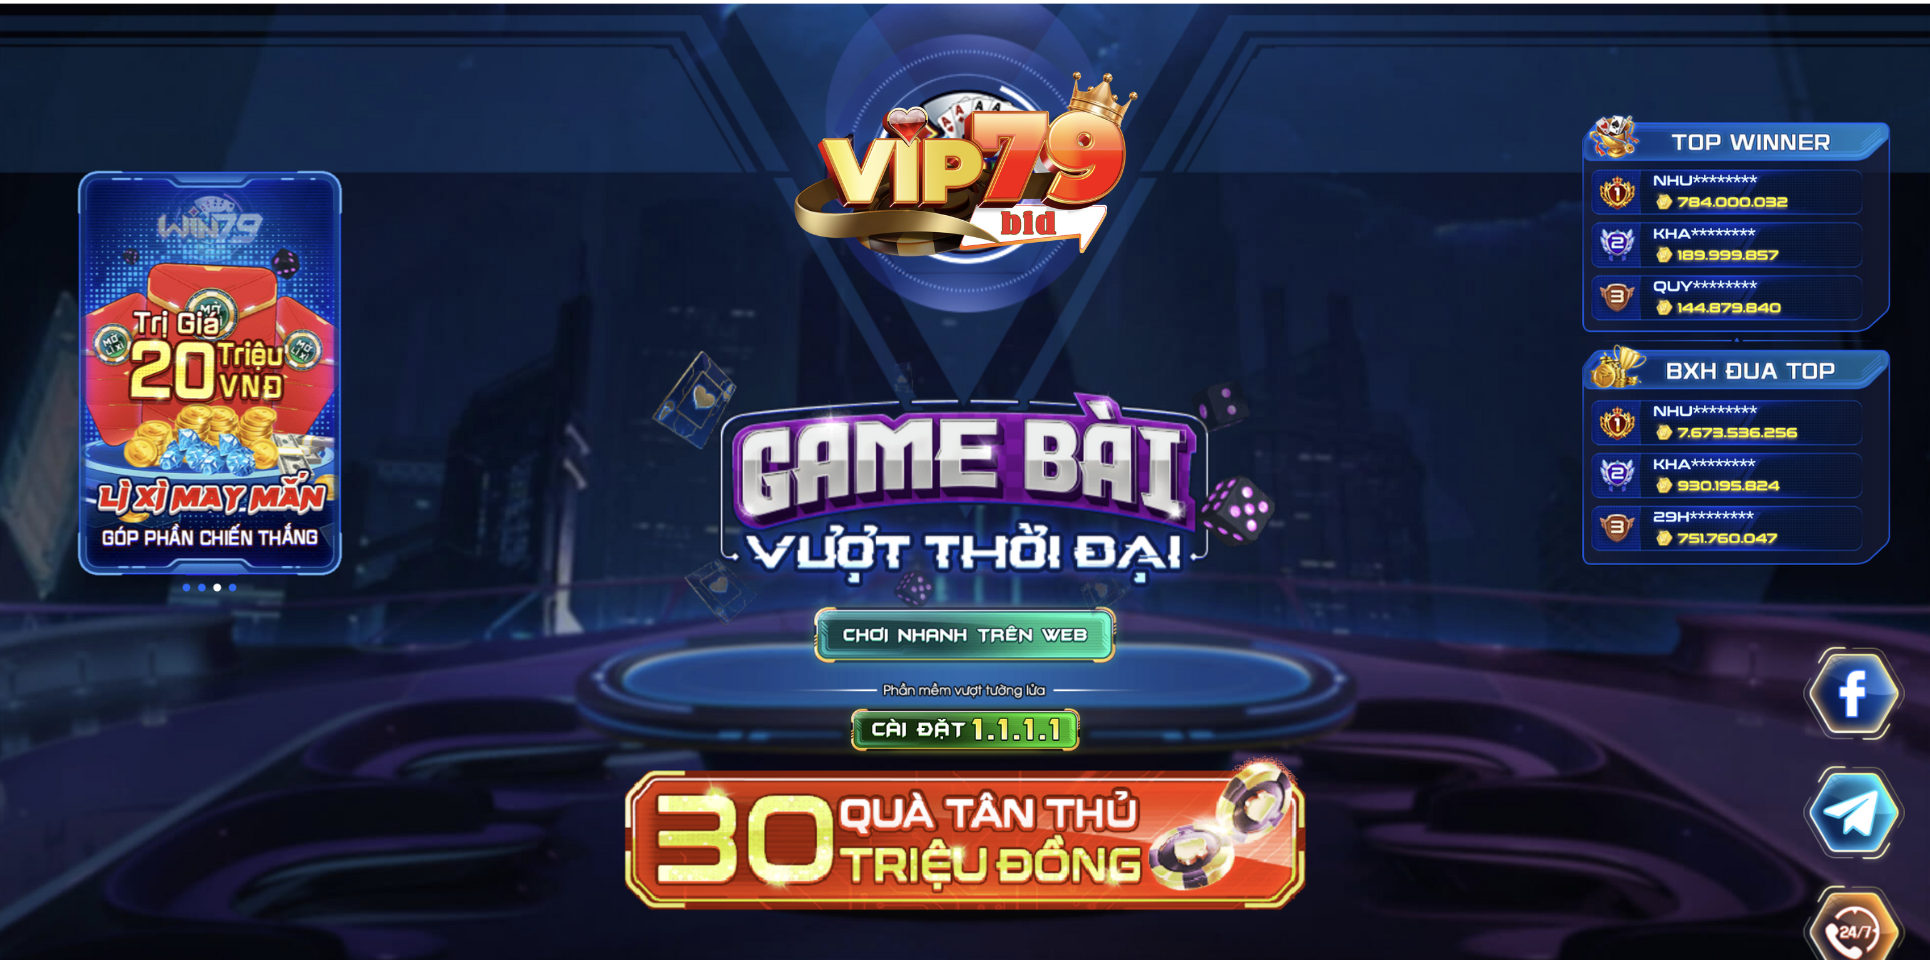 Link tải mới nhất cho cổng game Vip79